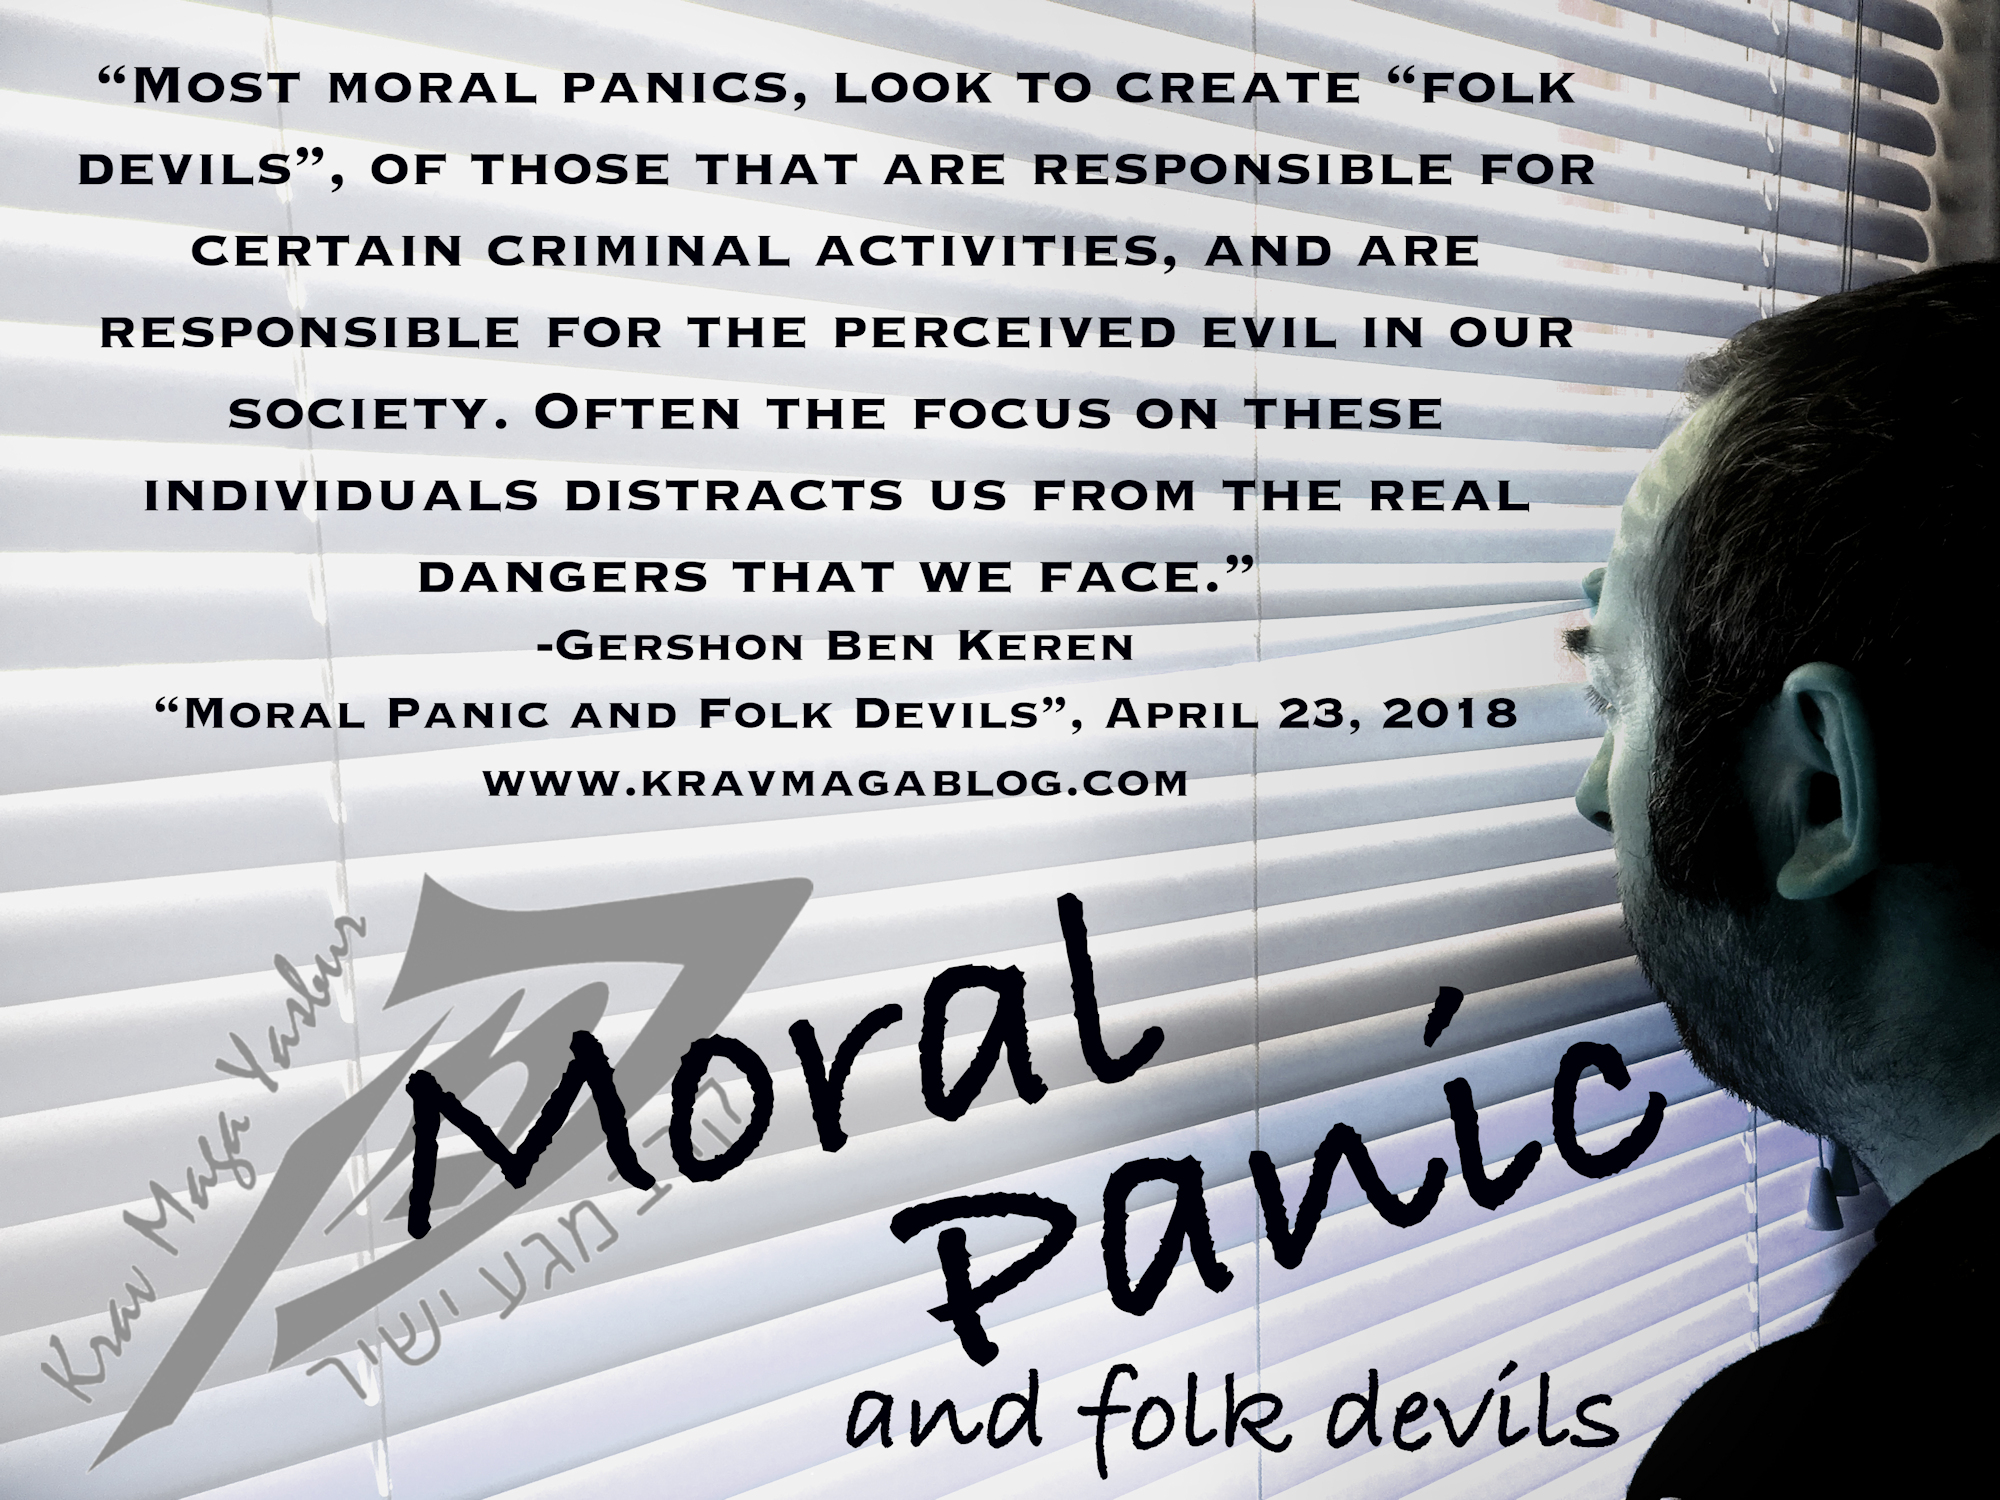 Blog About Moral Panics & Folk Devils